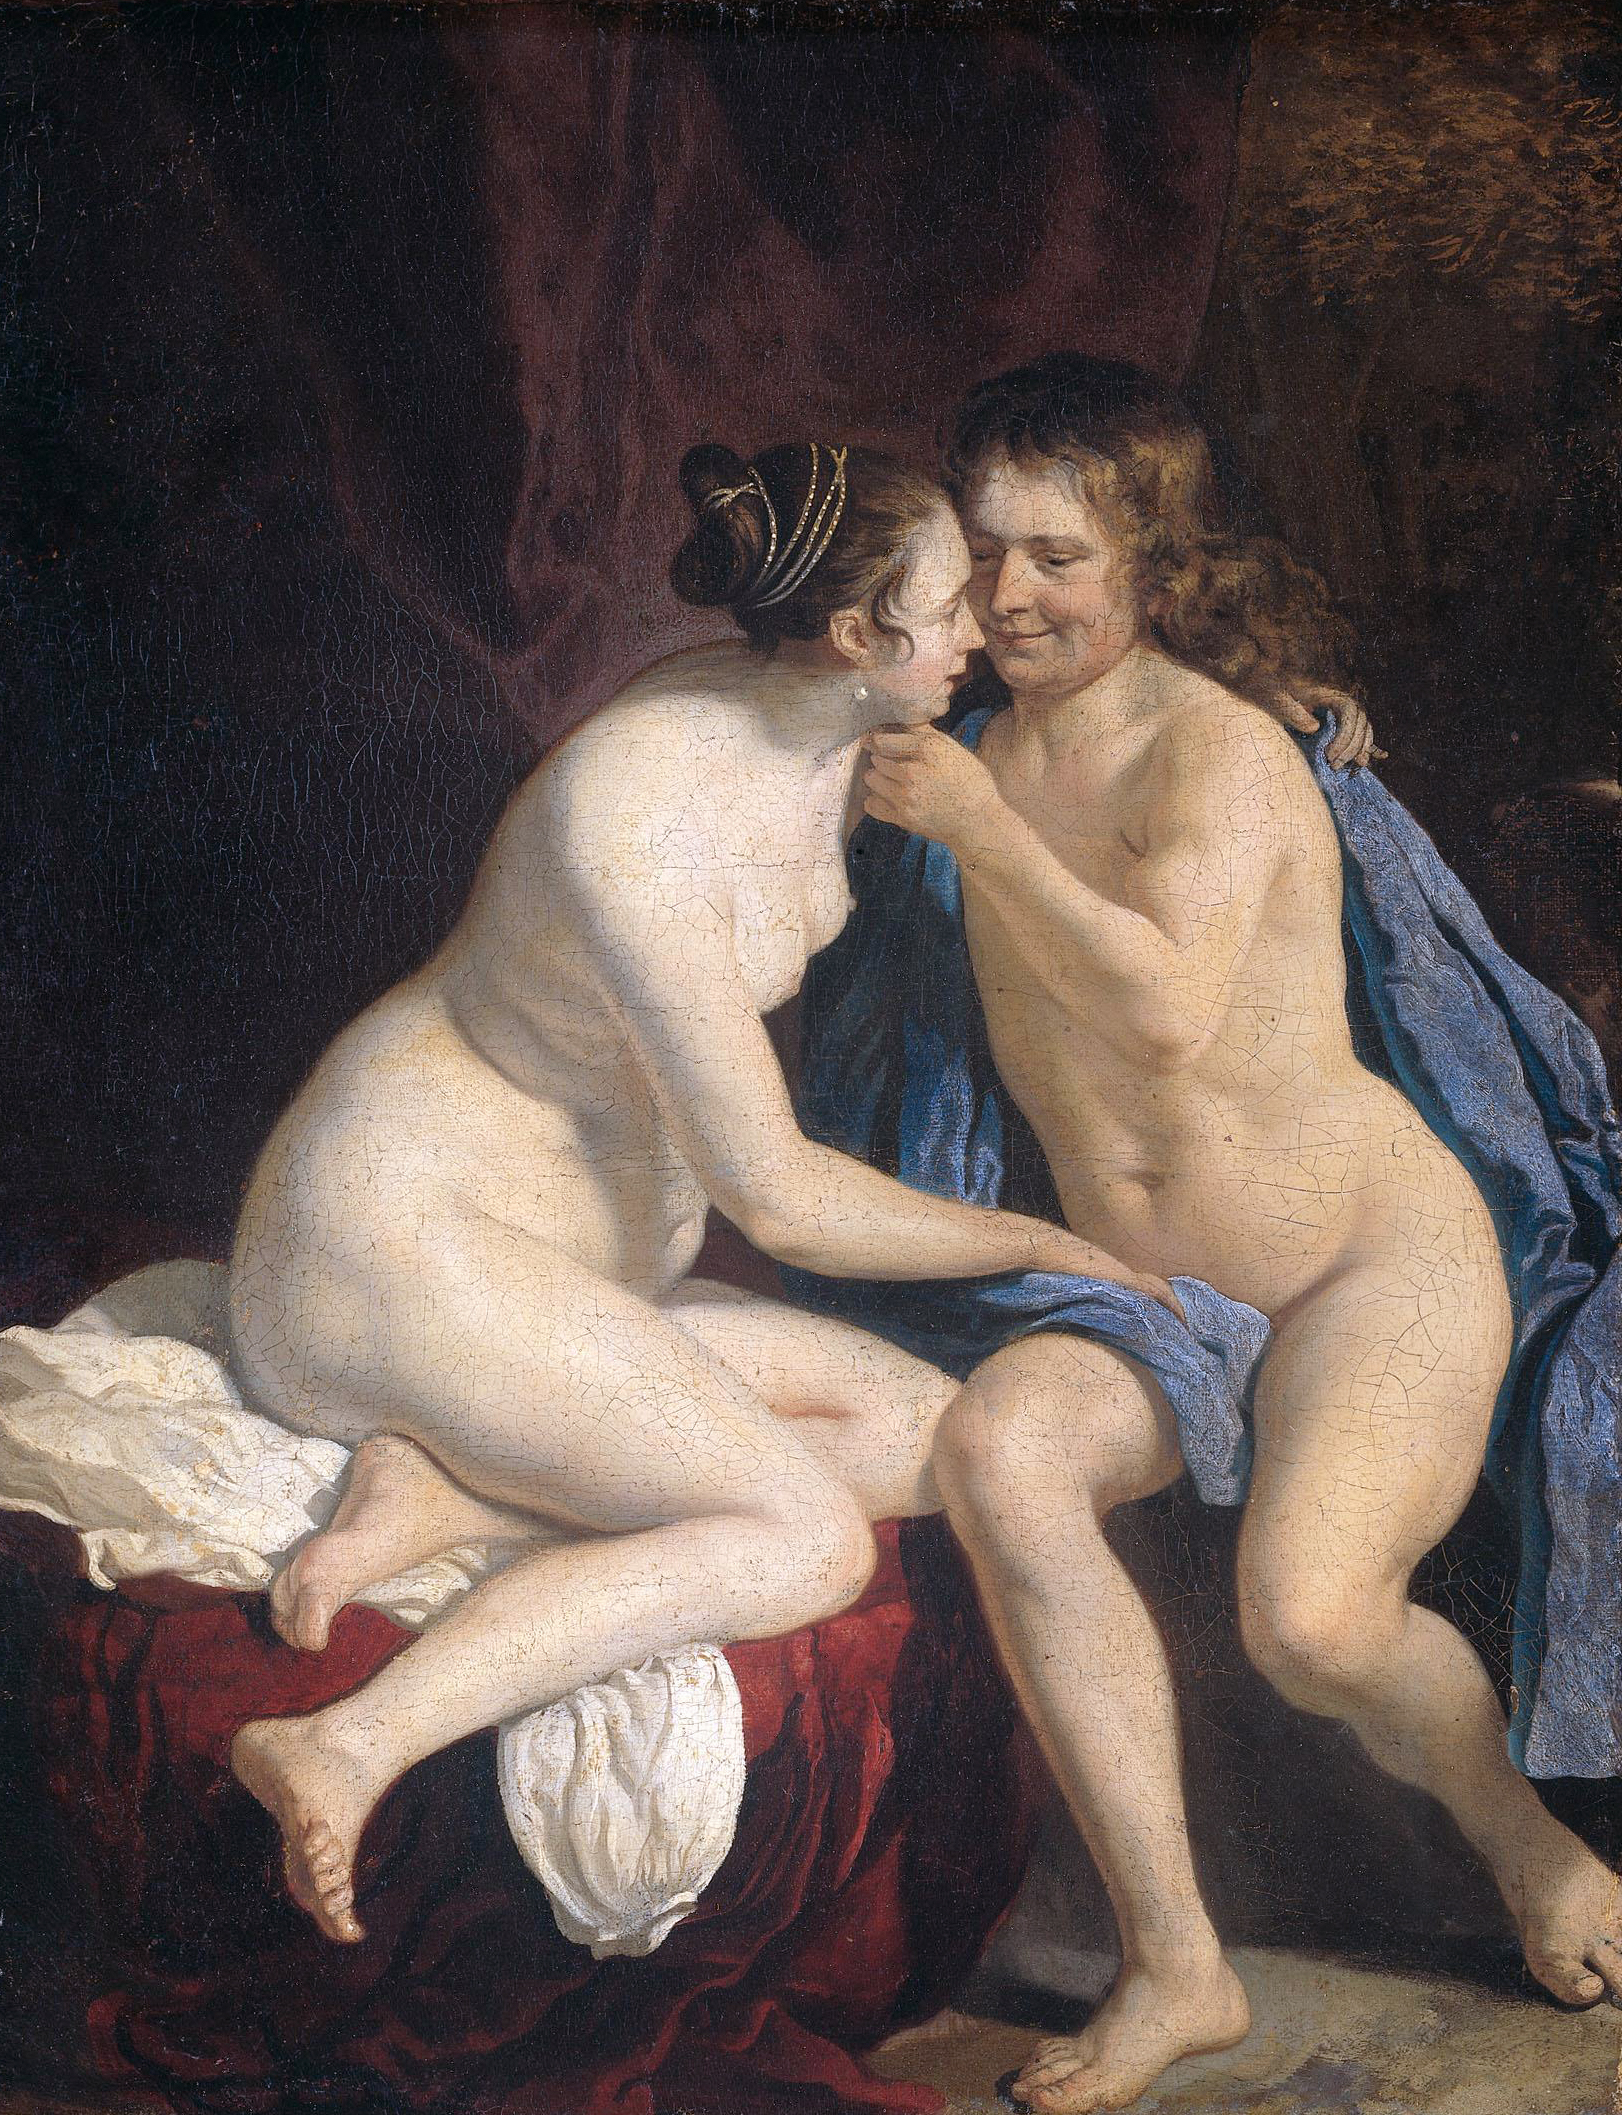 Men And Women Nude 14